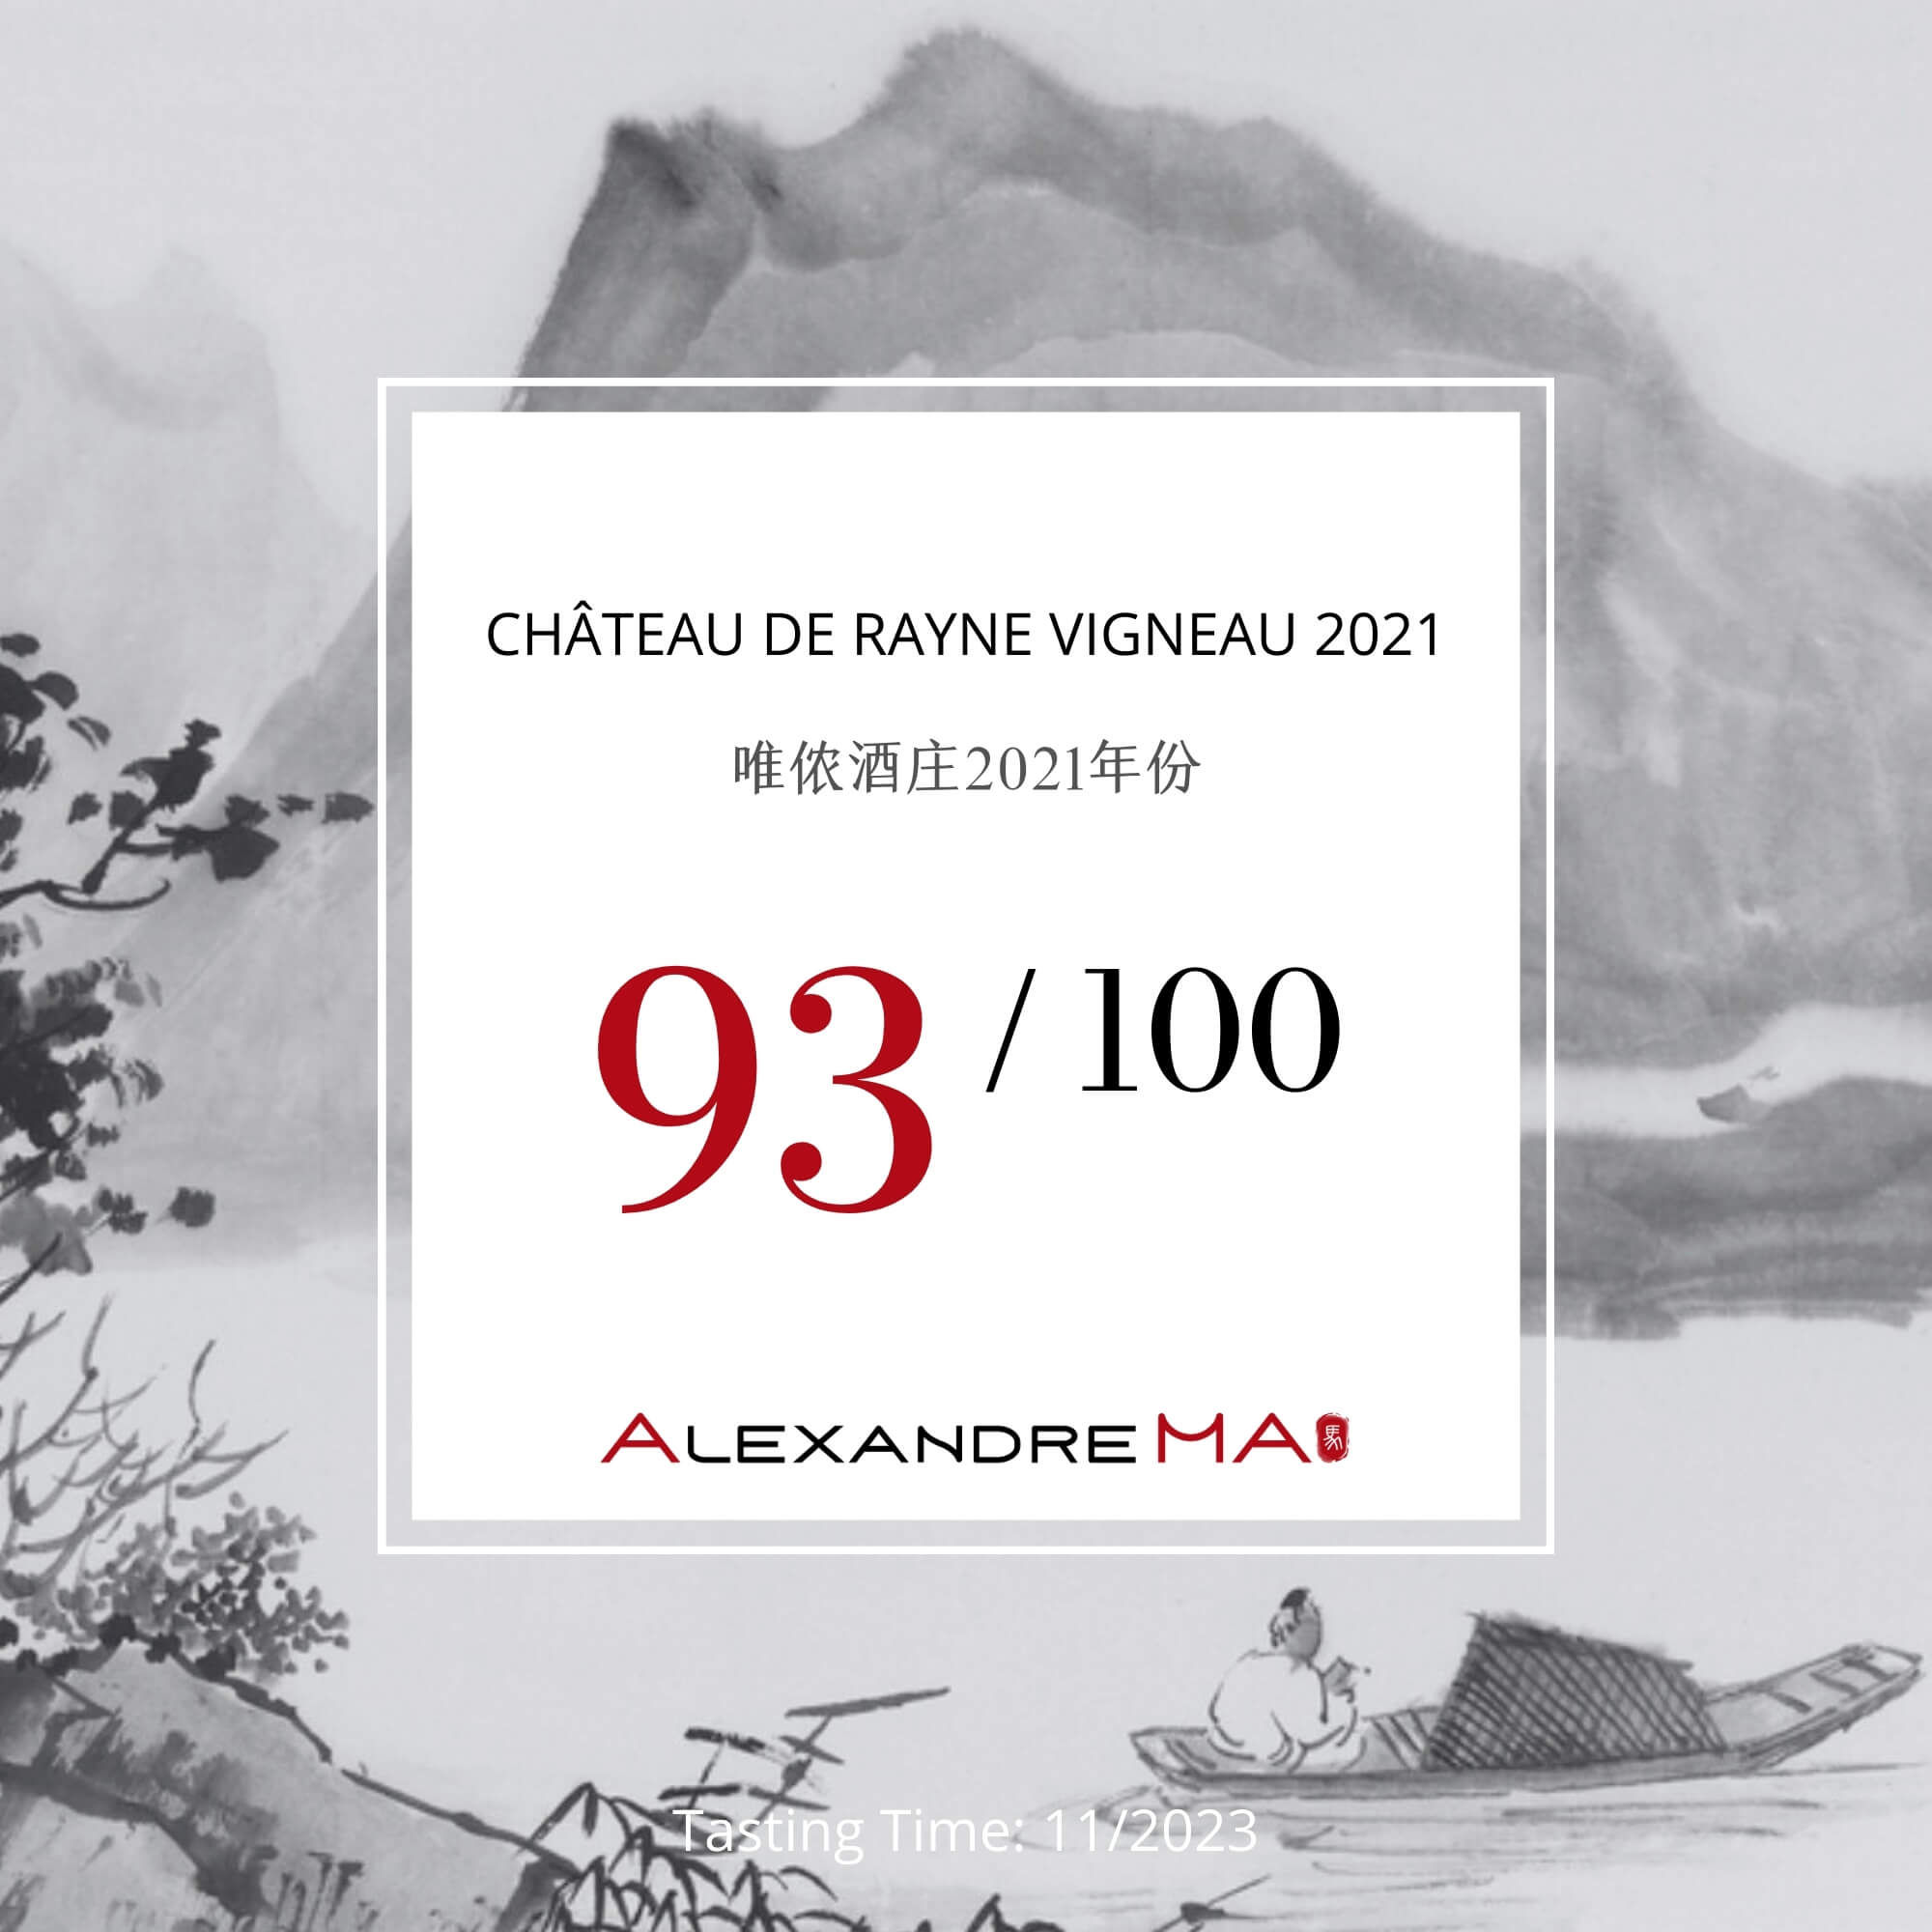 Château de Rayne Vigneau 2021 - Alexandre MA